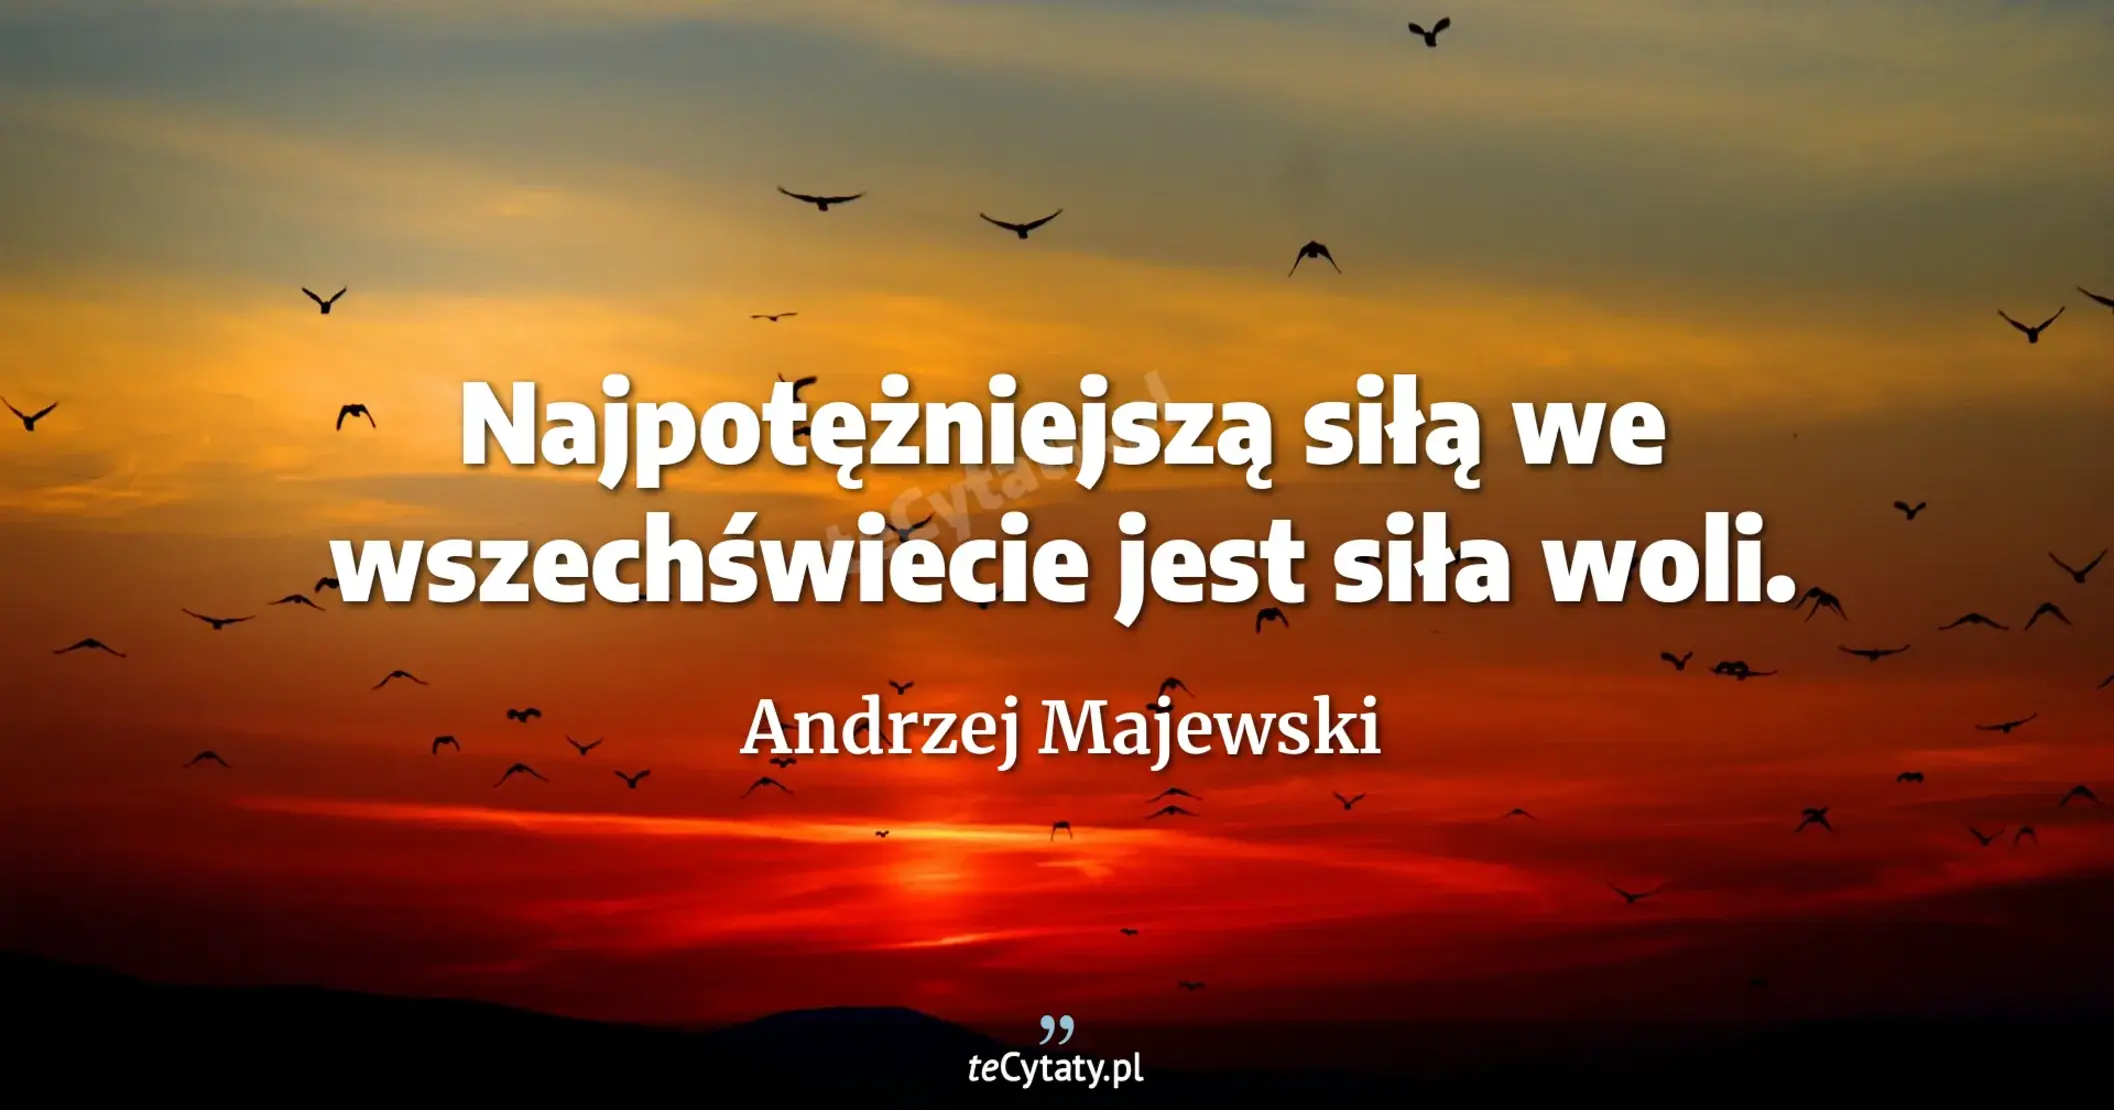 Najpotężniejszą siłą we wszechświecie jest siła woli. - Andrzej Majewski